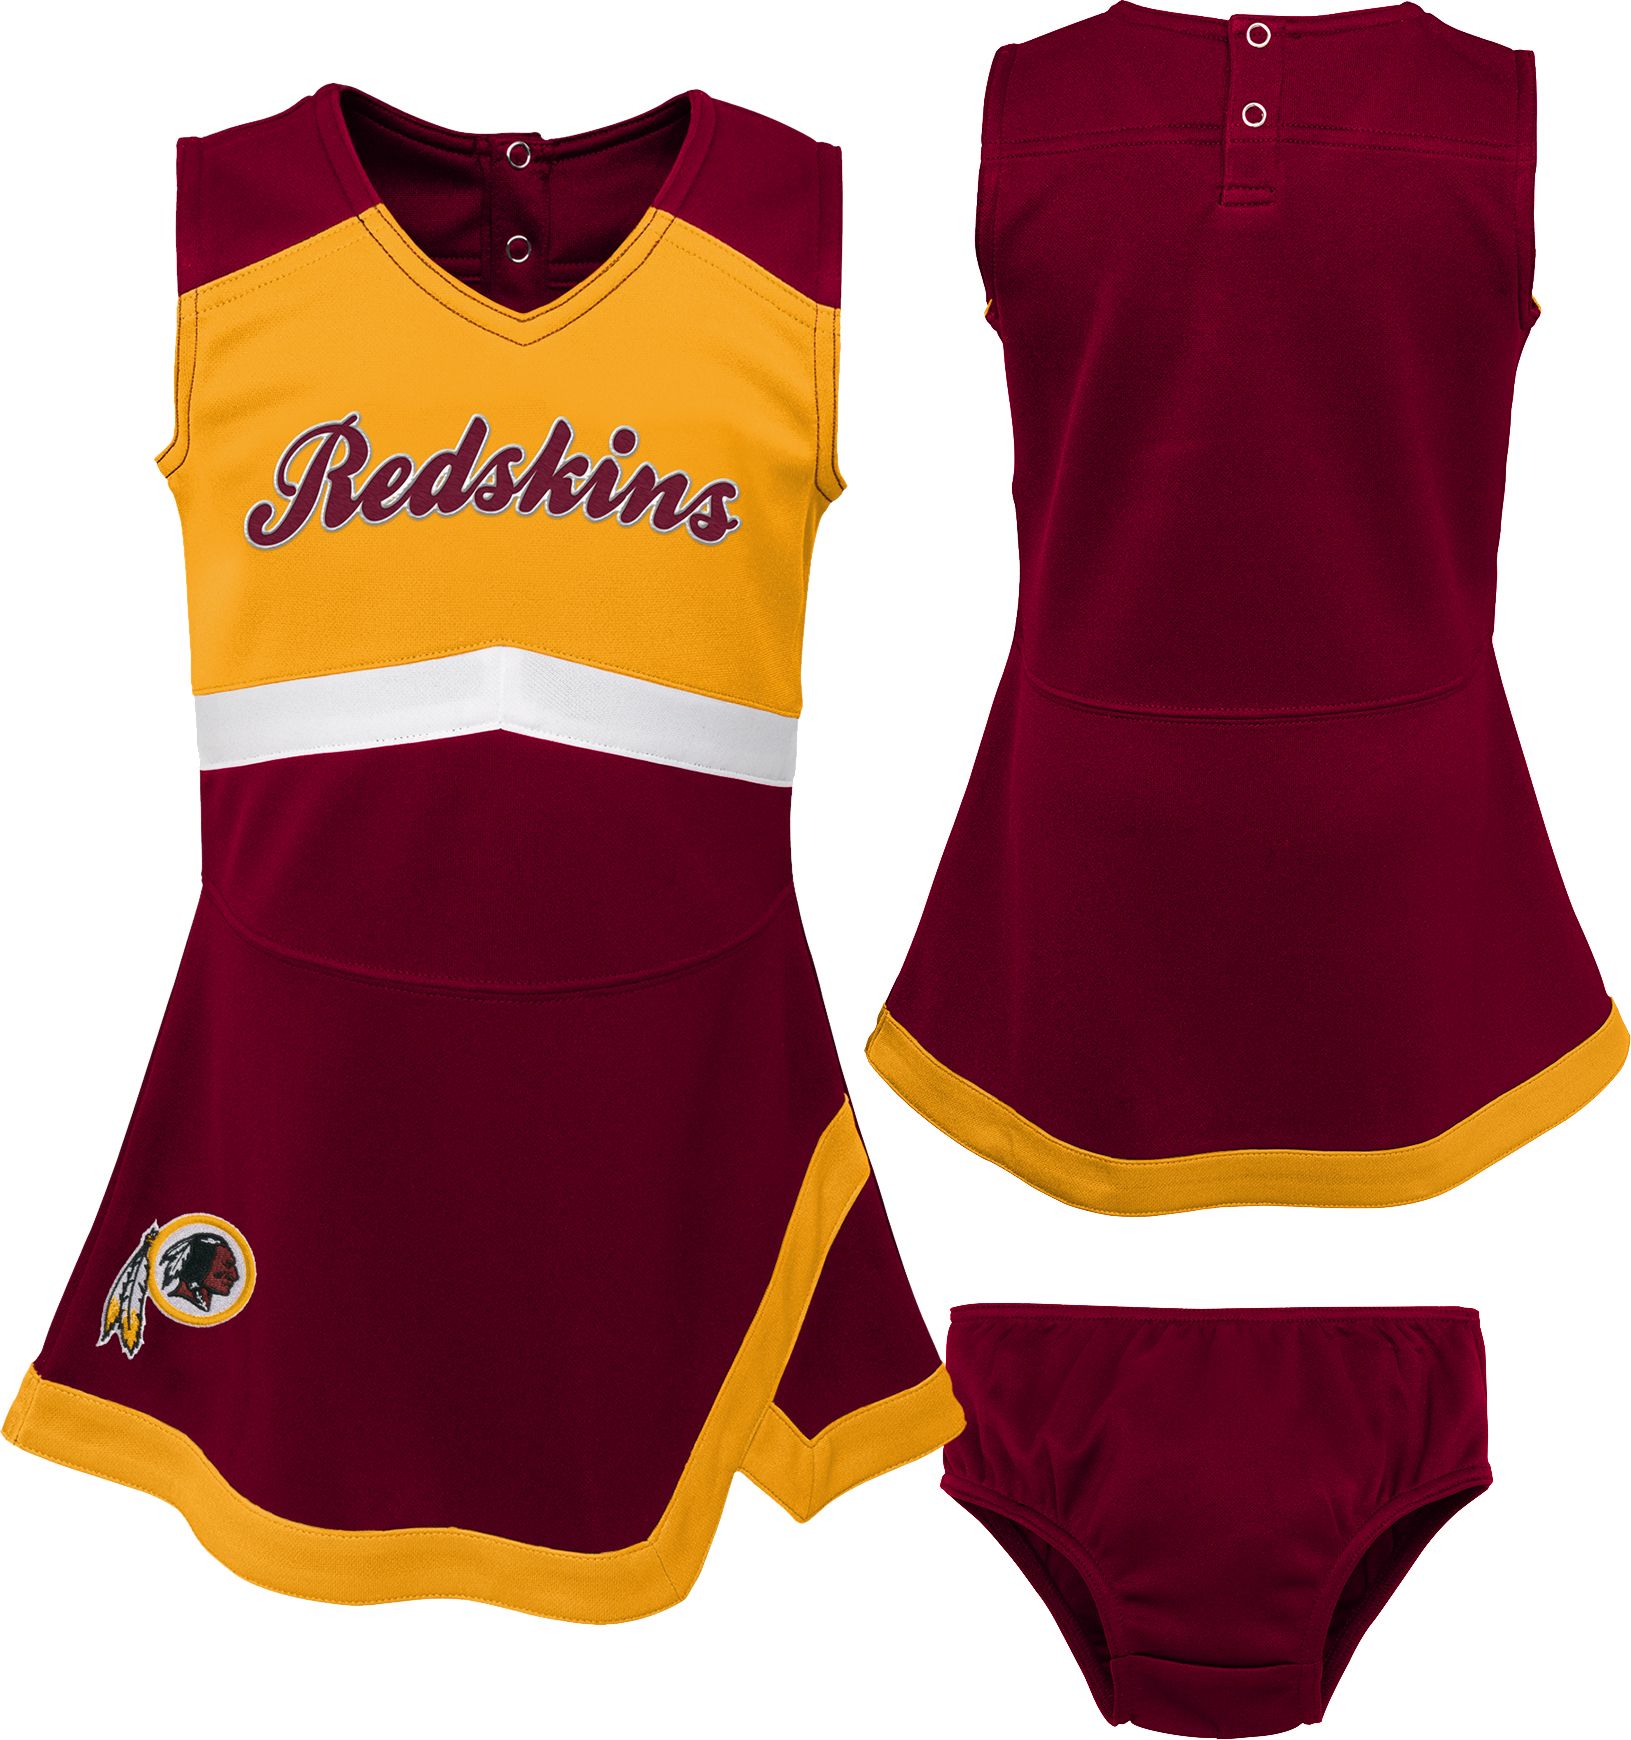 washington redskins toddler jersey